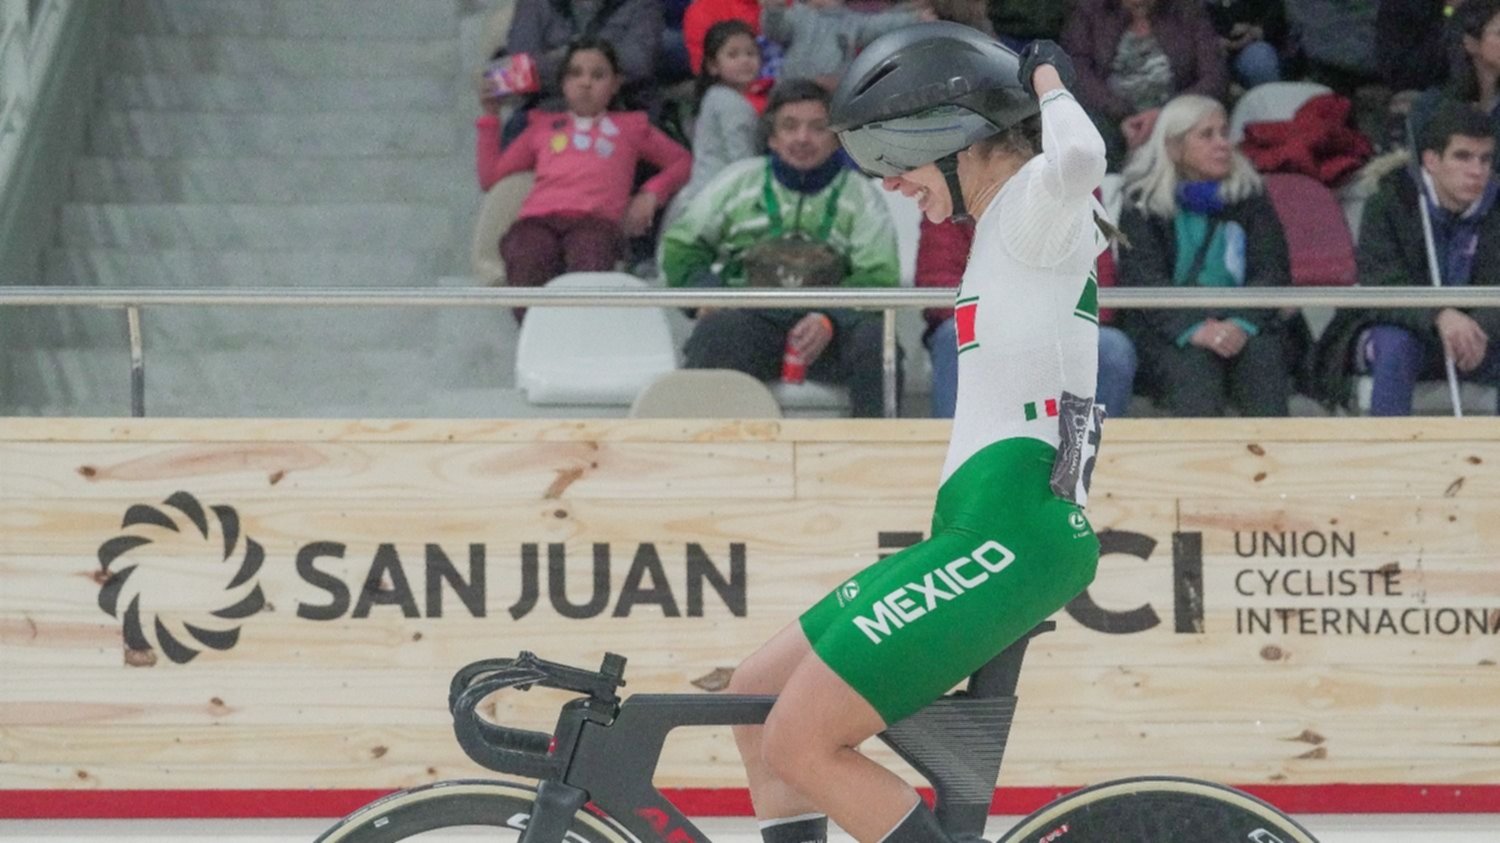 Ciclistas mexicanos llegan a Puerto Rico para Campeonato Panamericano